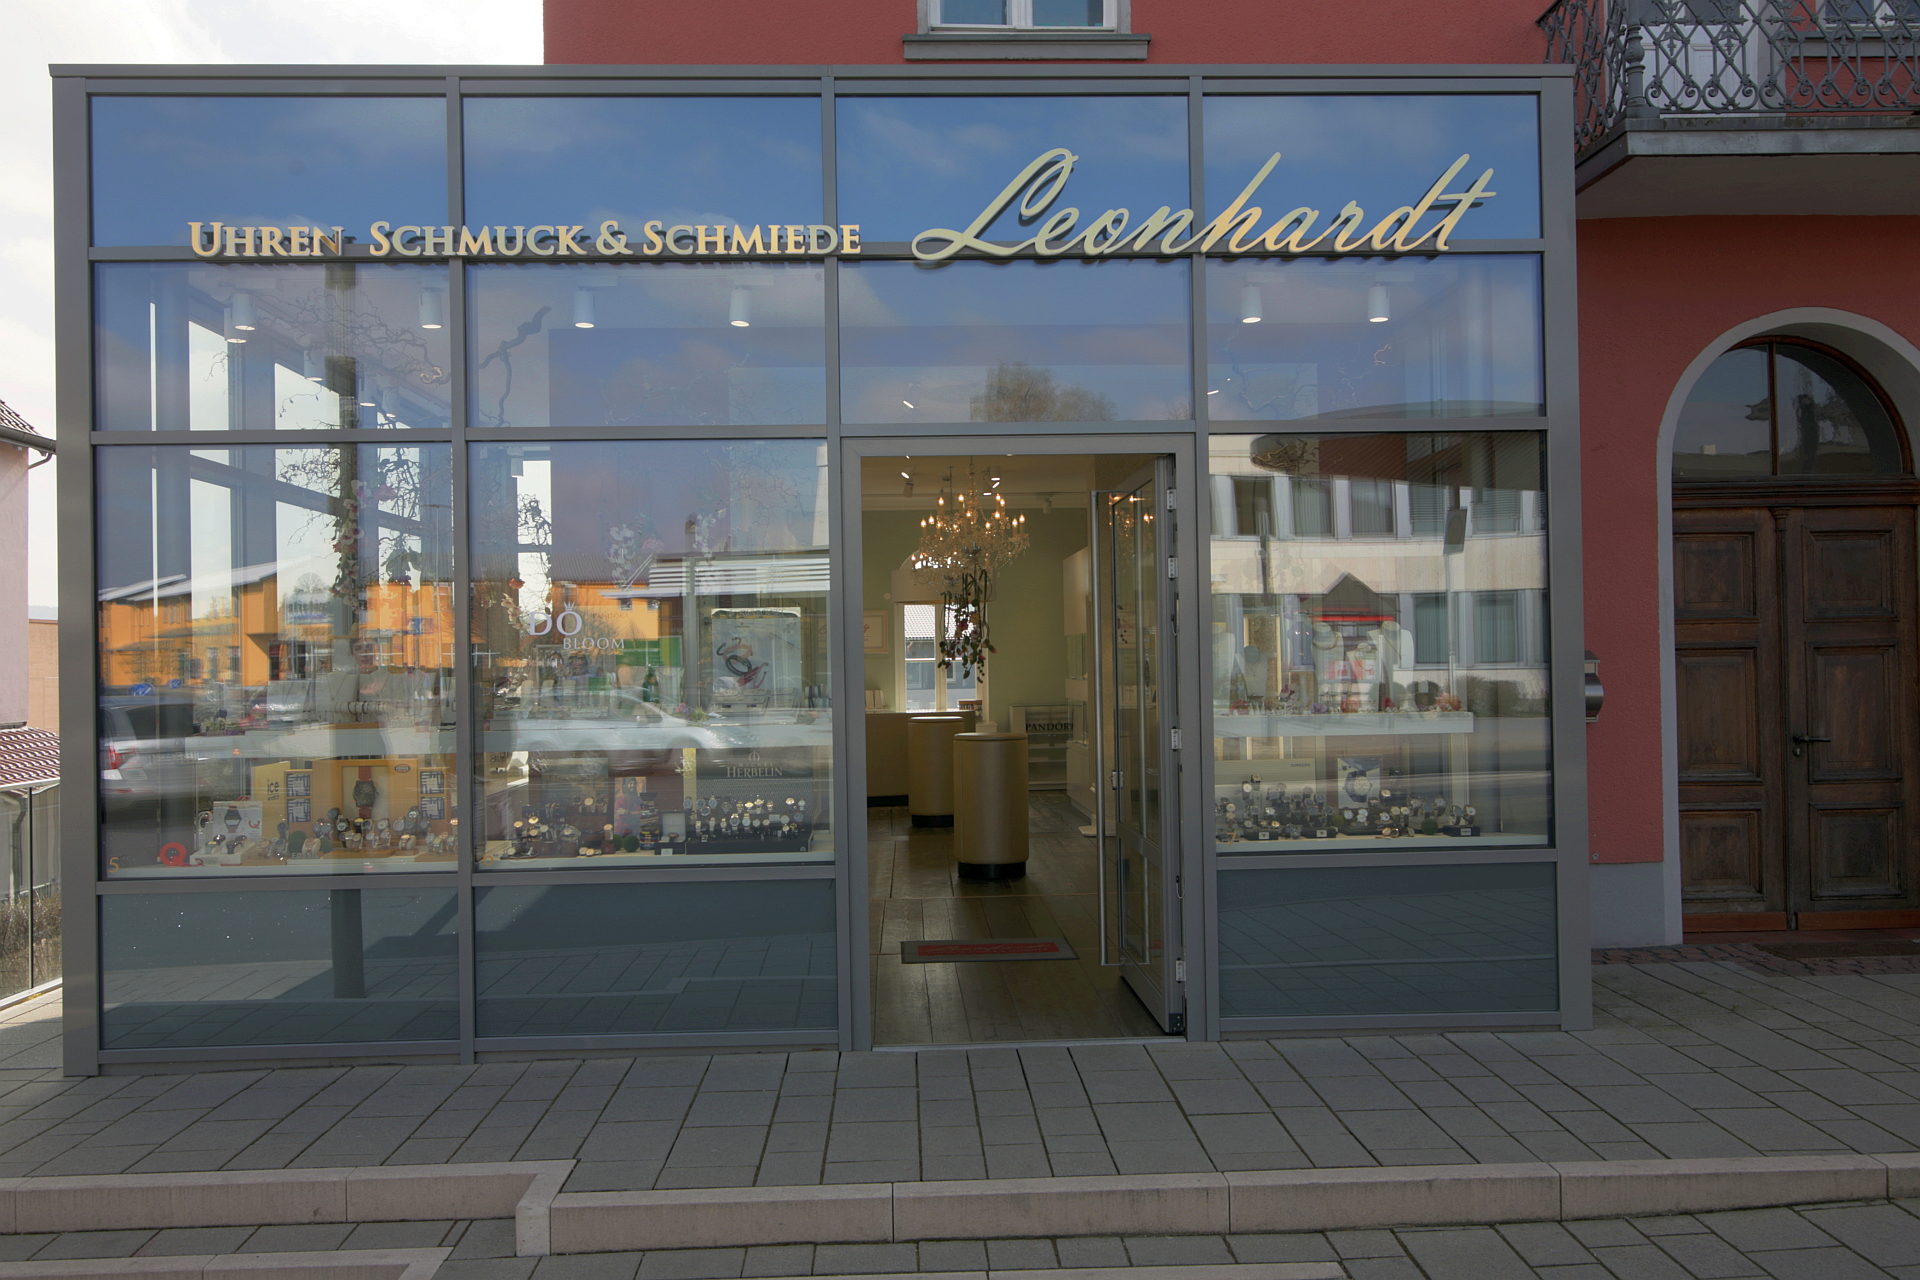 Leonhardt – Uhren, Schmuck & Schmiede